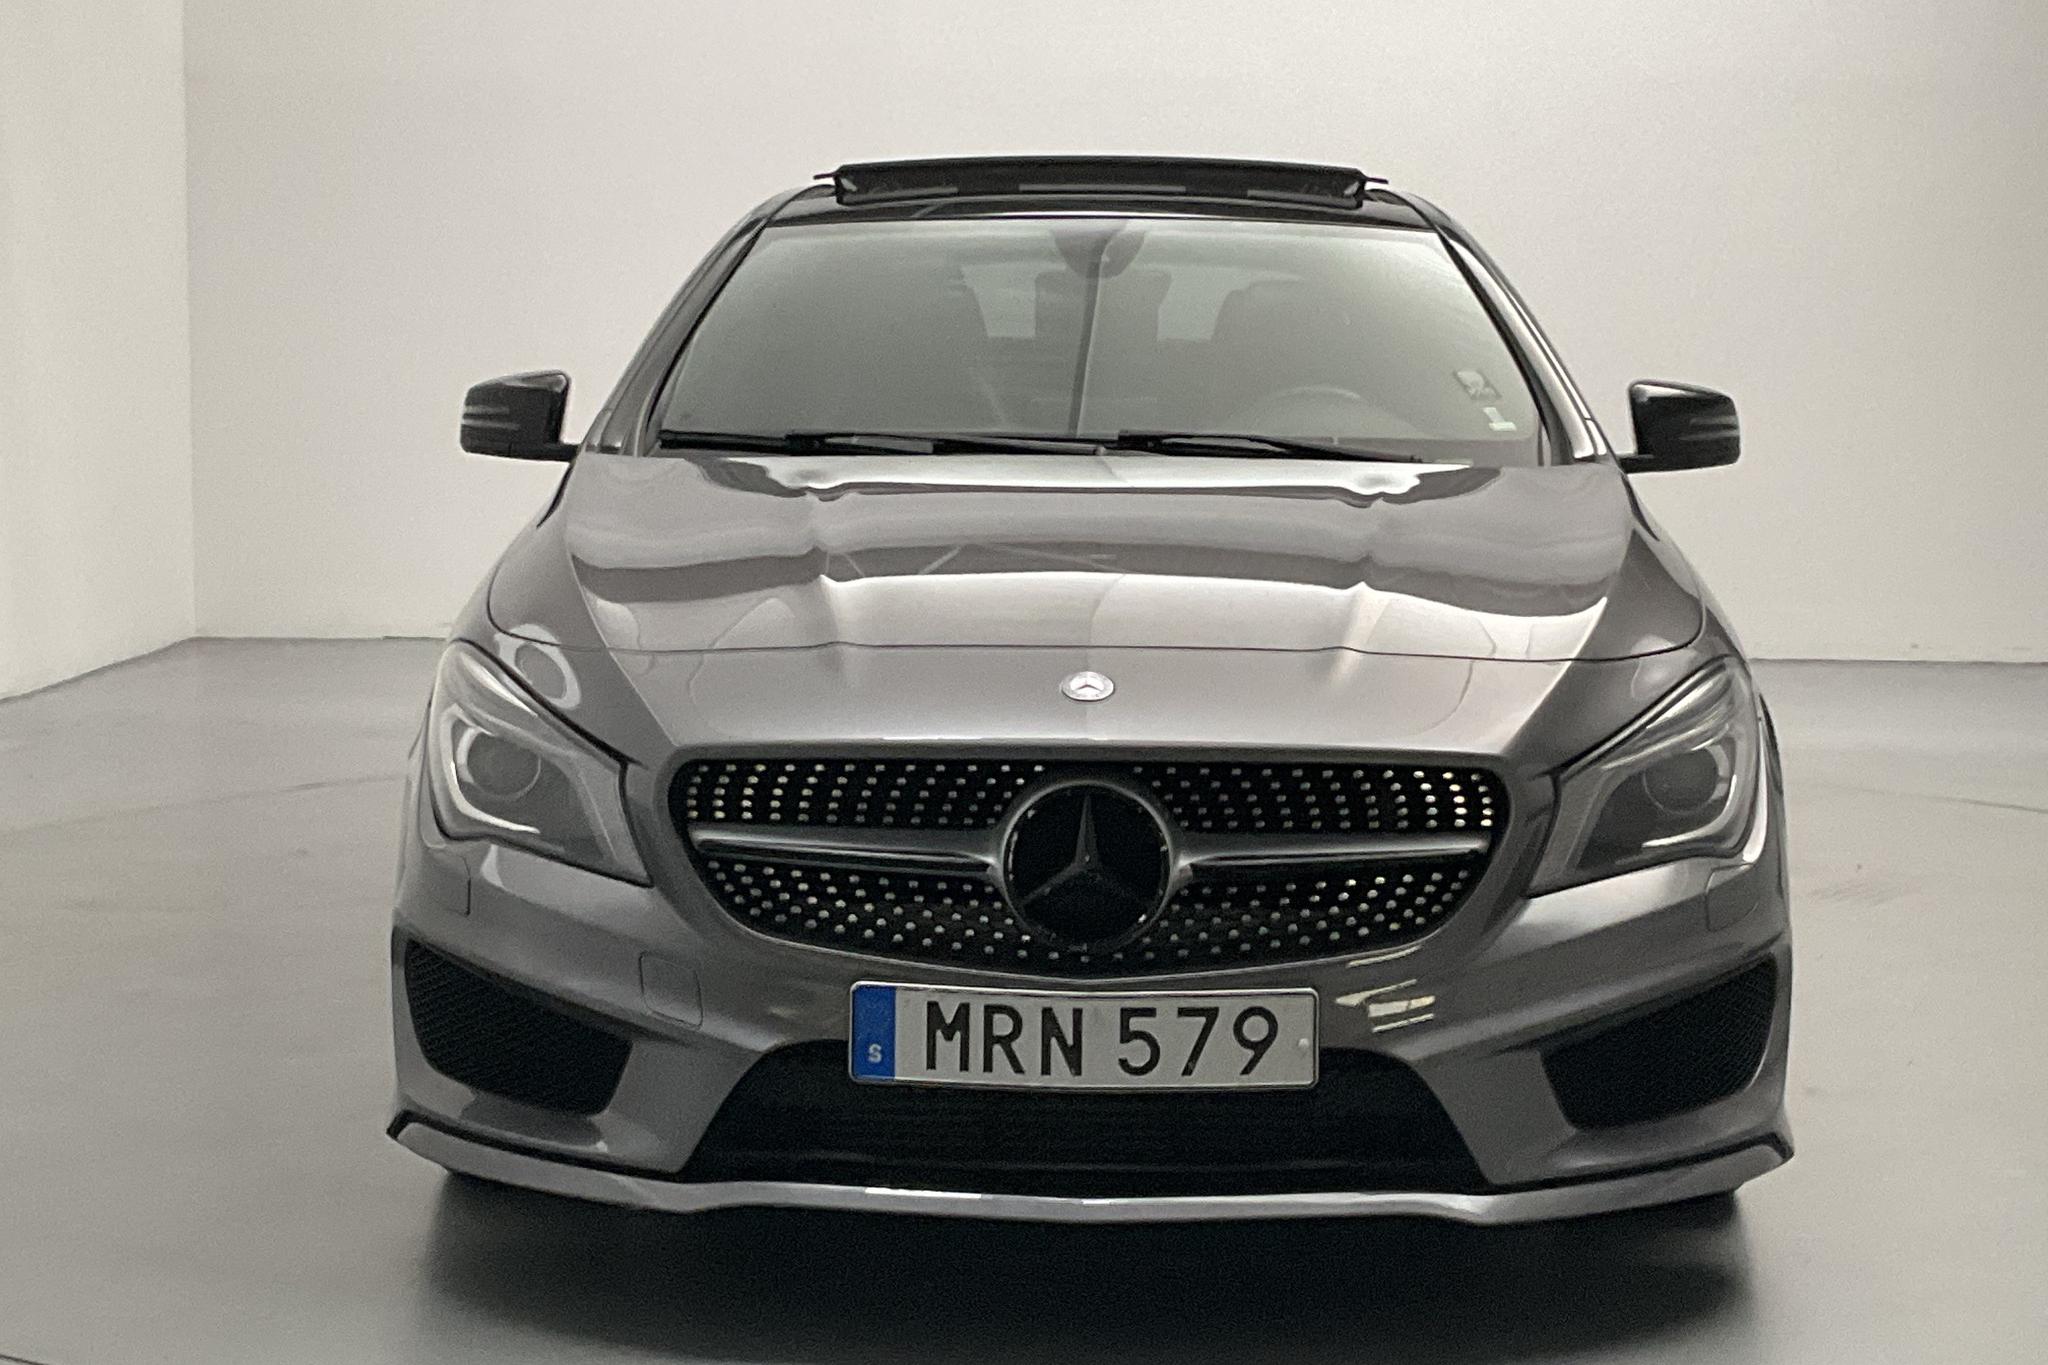 Mercedes CLA 200 CDI 4MATIC (136hk) - 130 690 km - Automatic - Dark Grey - 2015